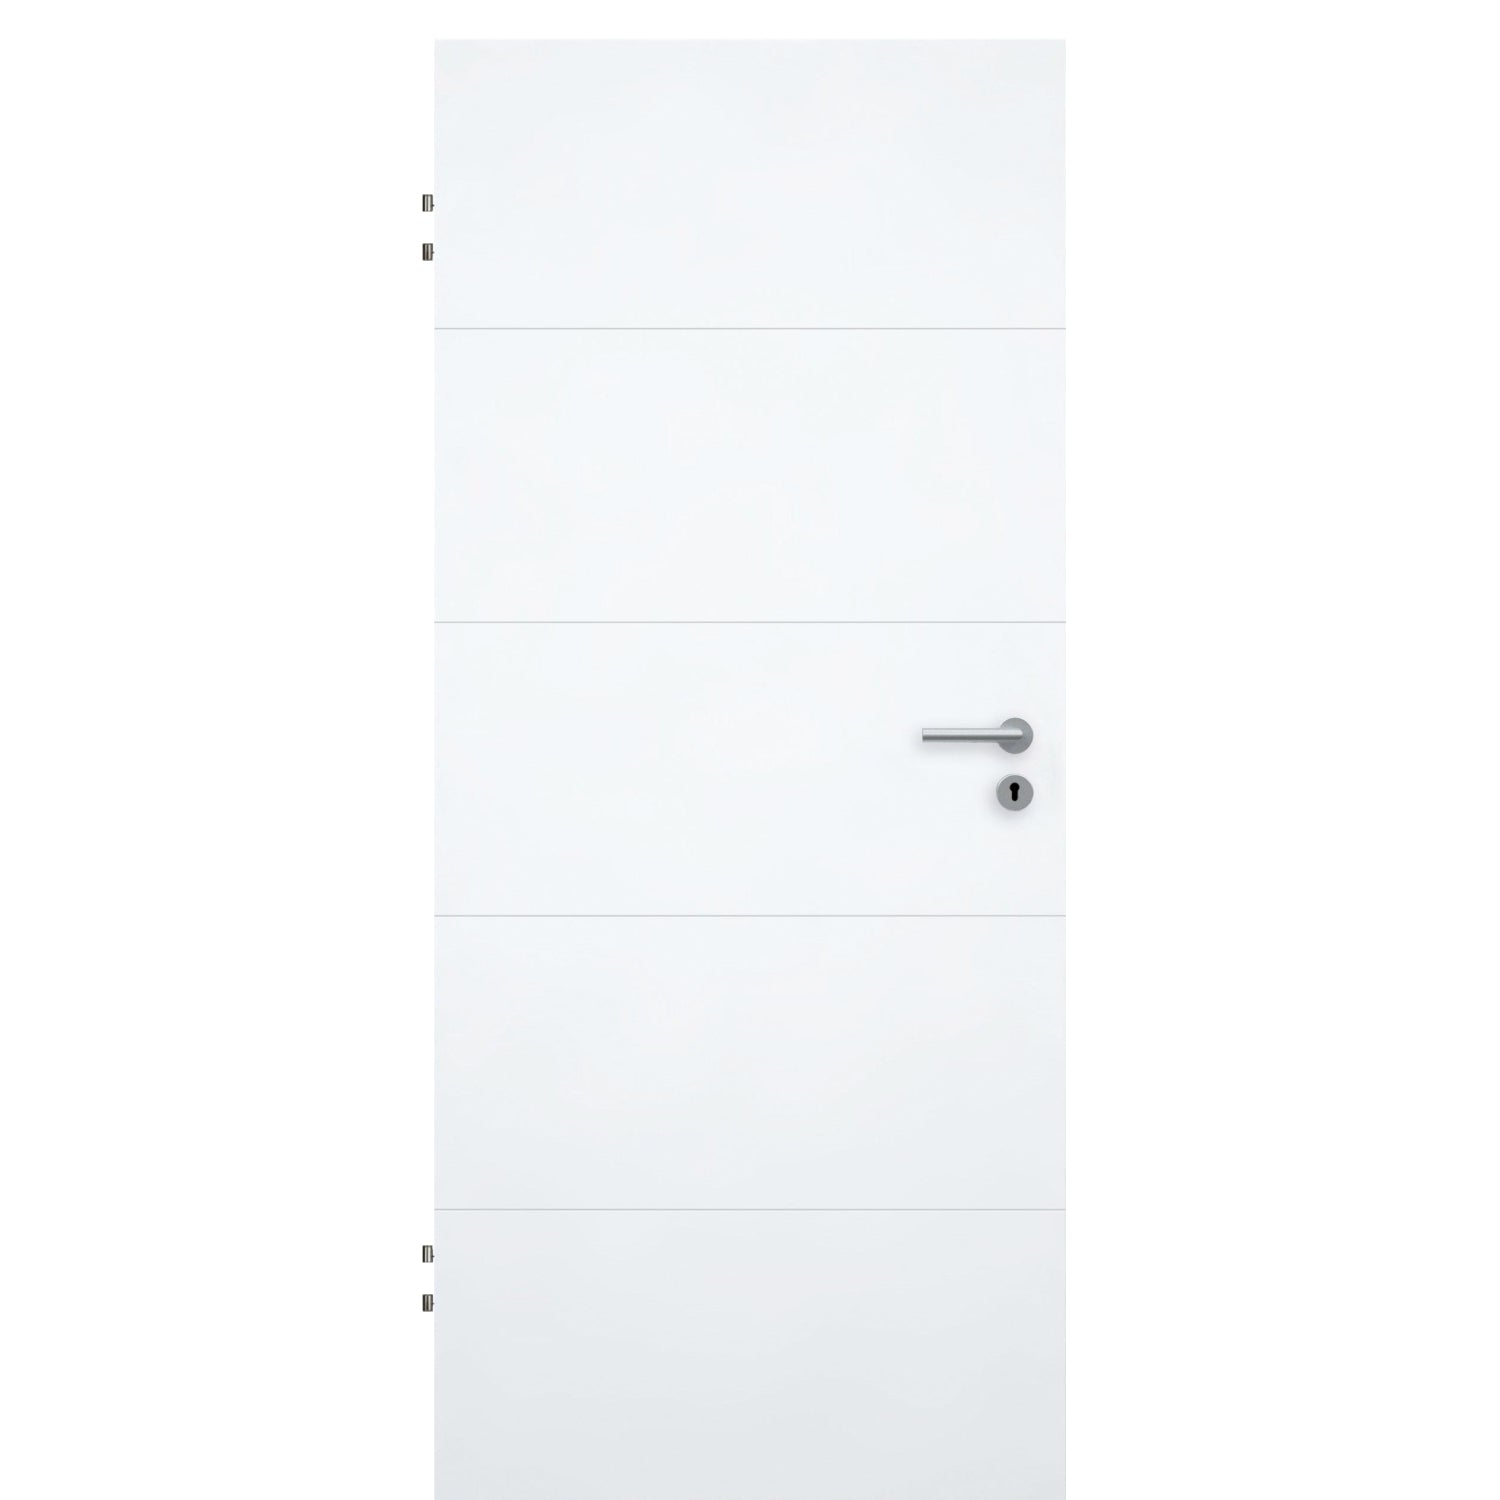 Wohnungseingangstür brillant-weiß 4 Rillen Designkante SK2 / KK3 - Modell Designtür Q43